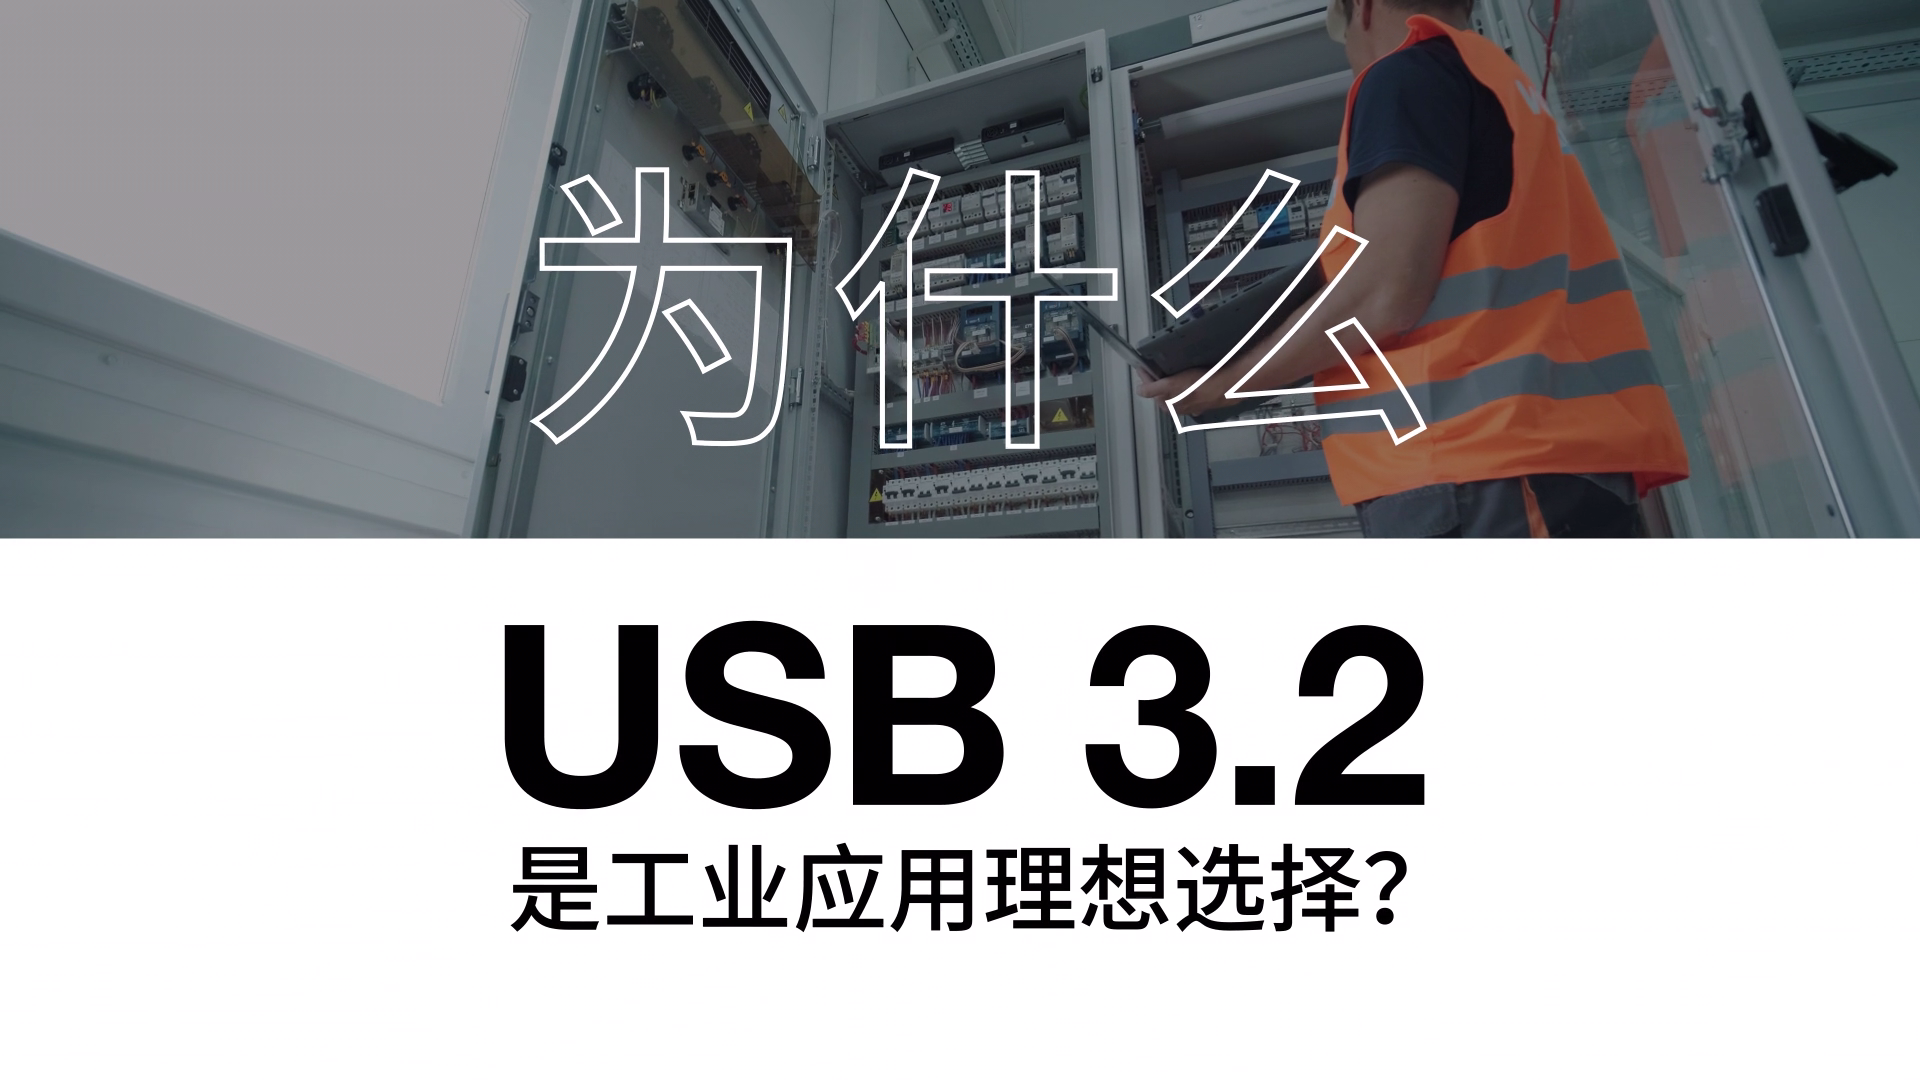  为什么 USB 3.2 是工业应用理想选择？